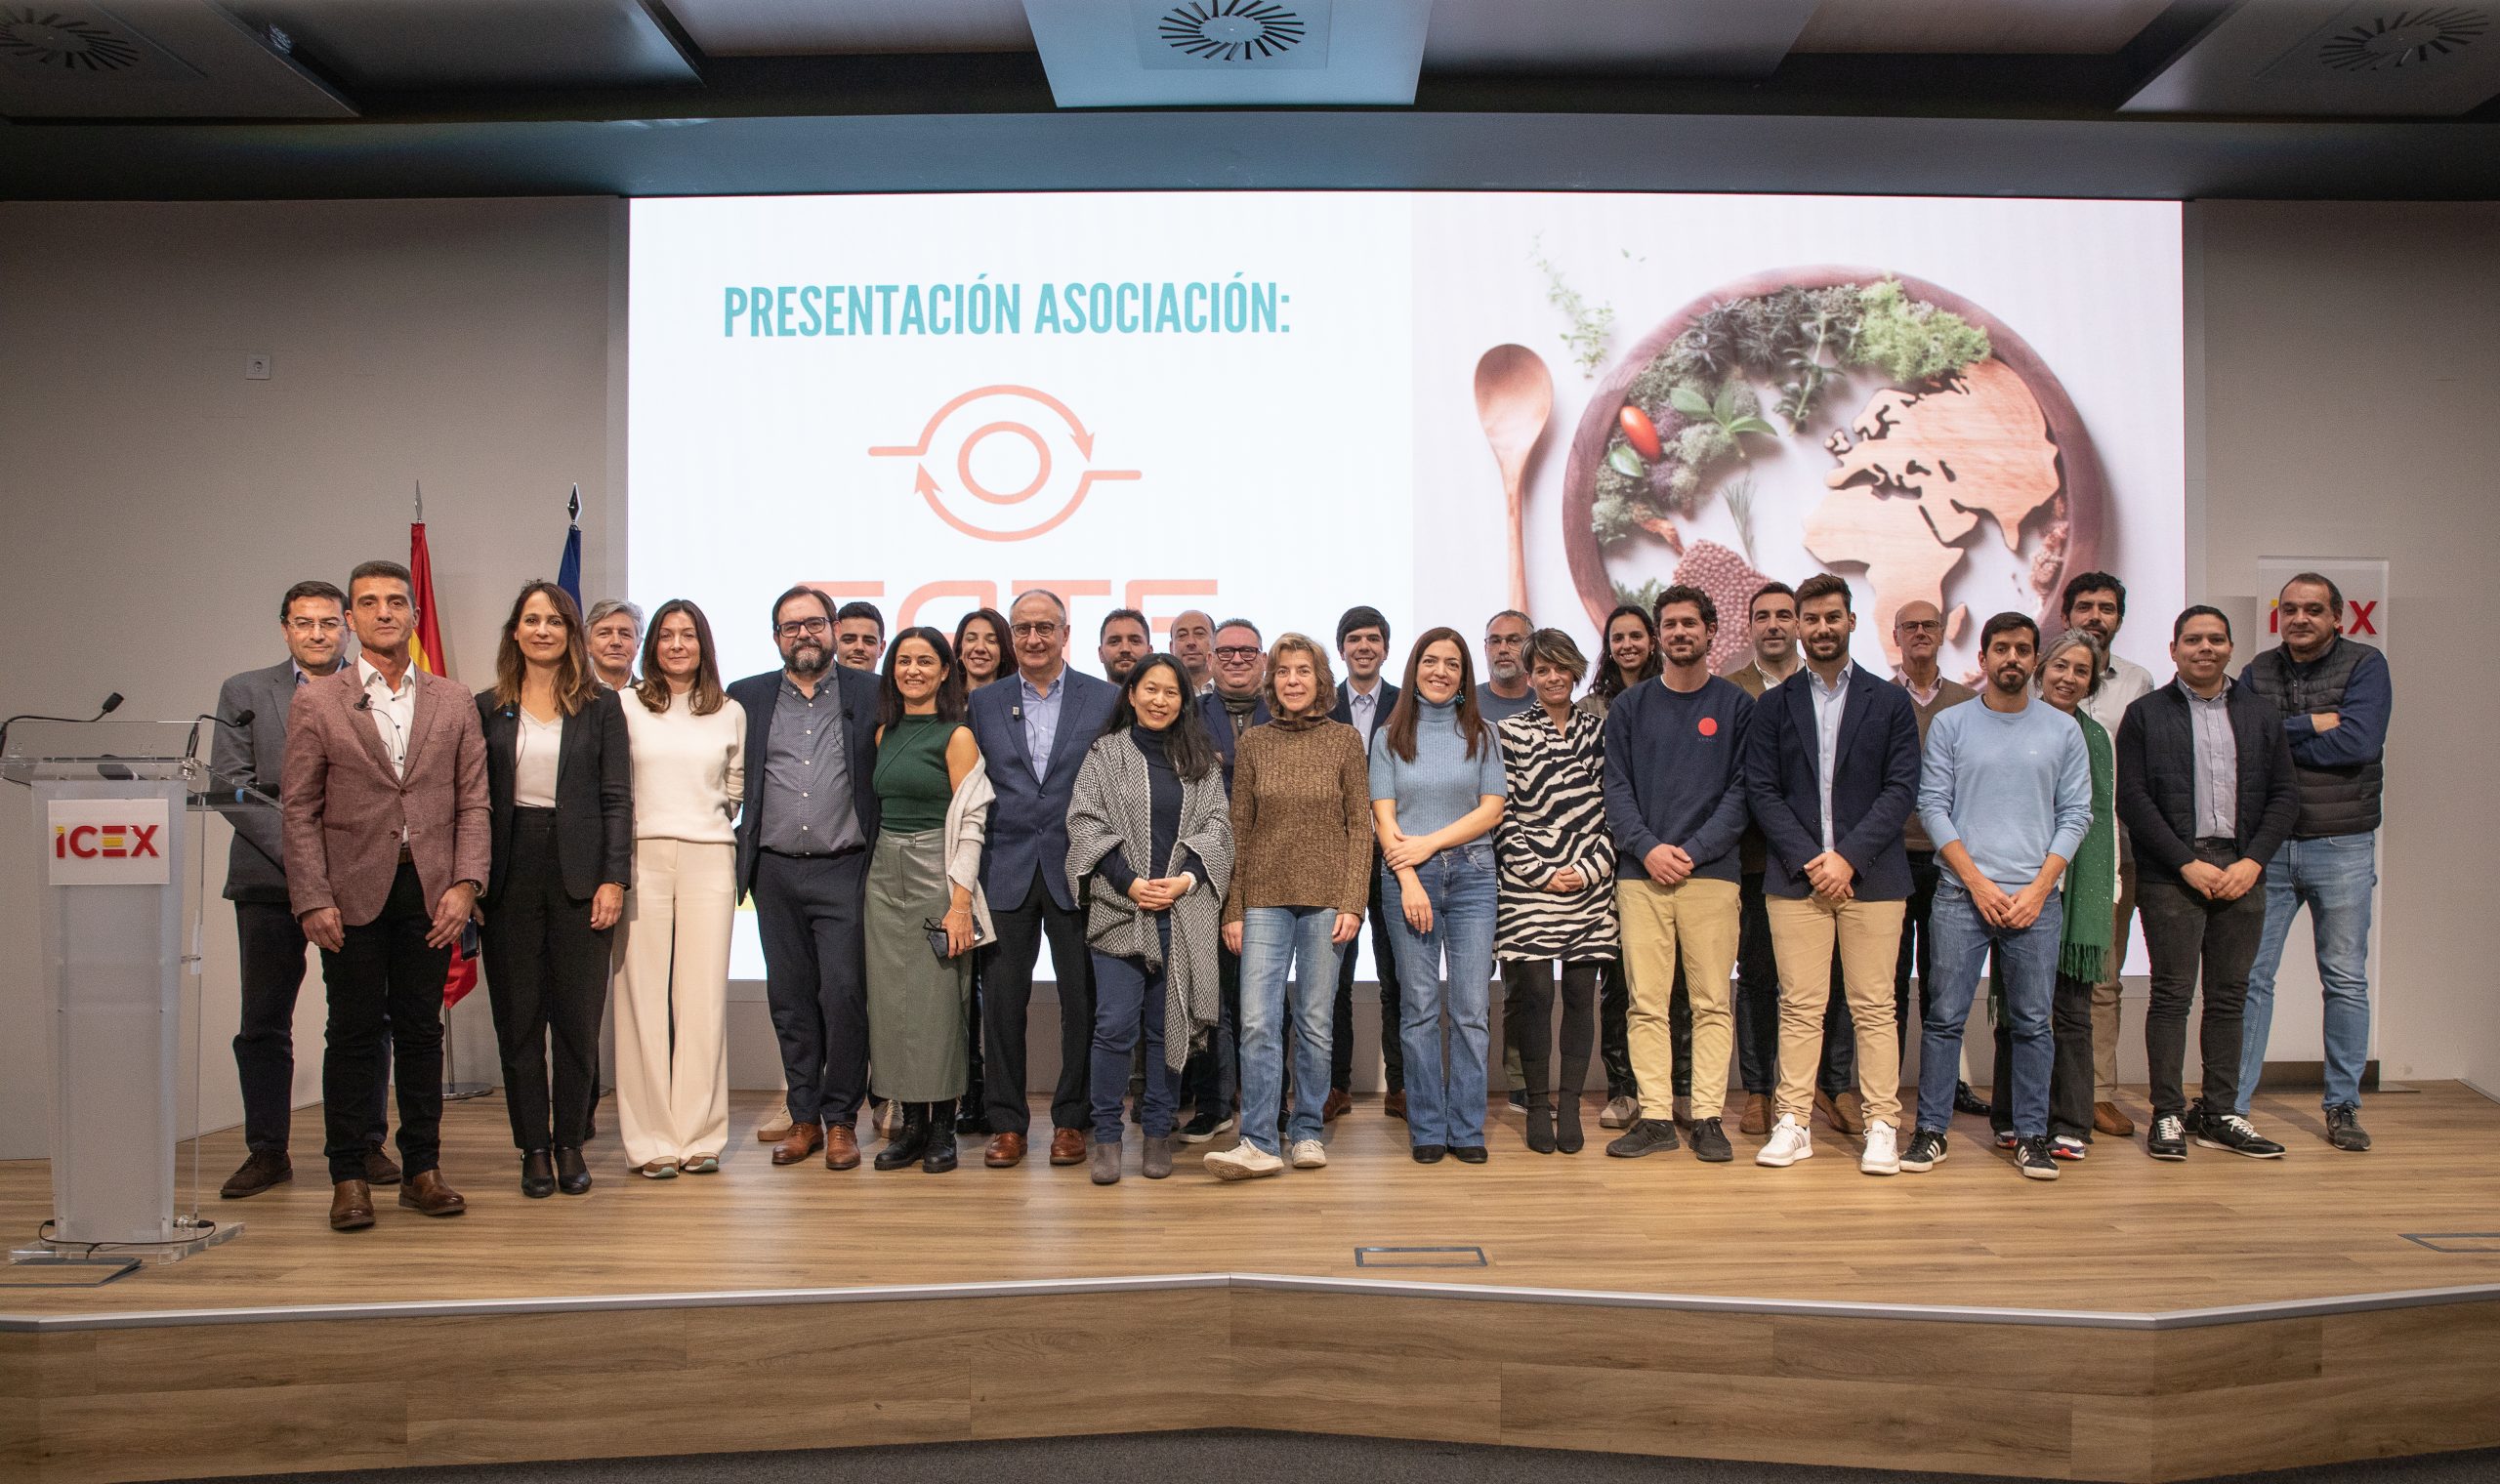 Imagen deSe presenta FATE (Food & Agri Tech Europe), una asociación pionera en el sector Foodtech en la que participa NUCAPS